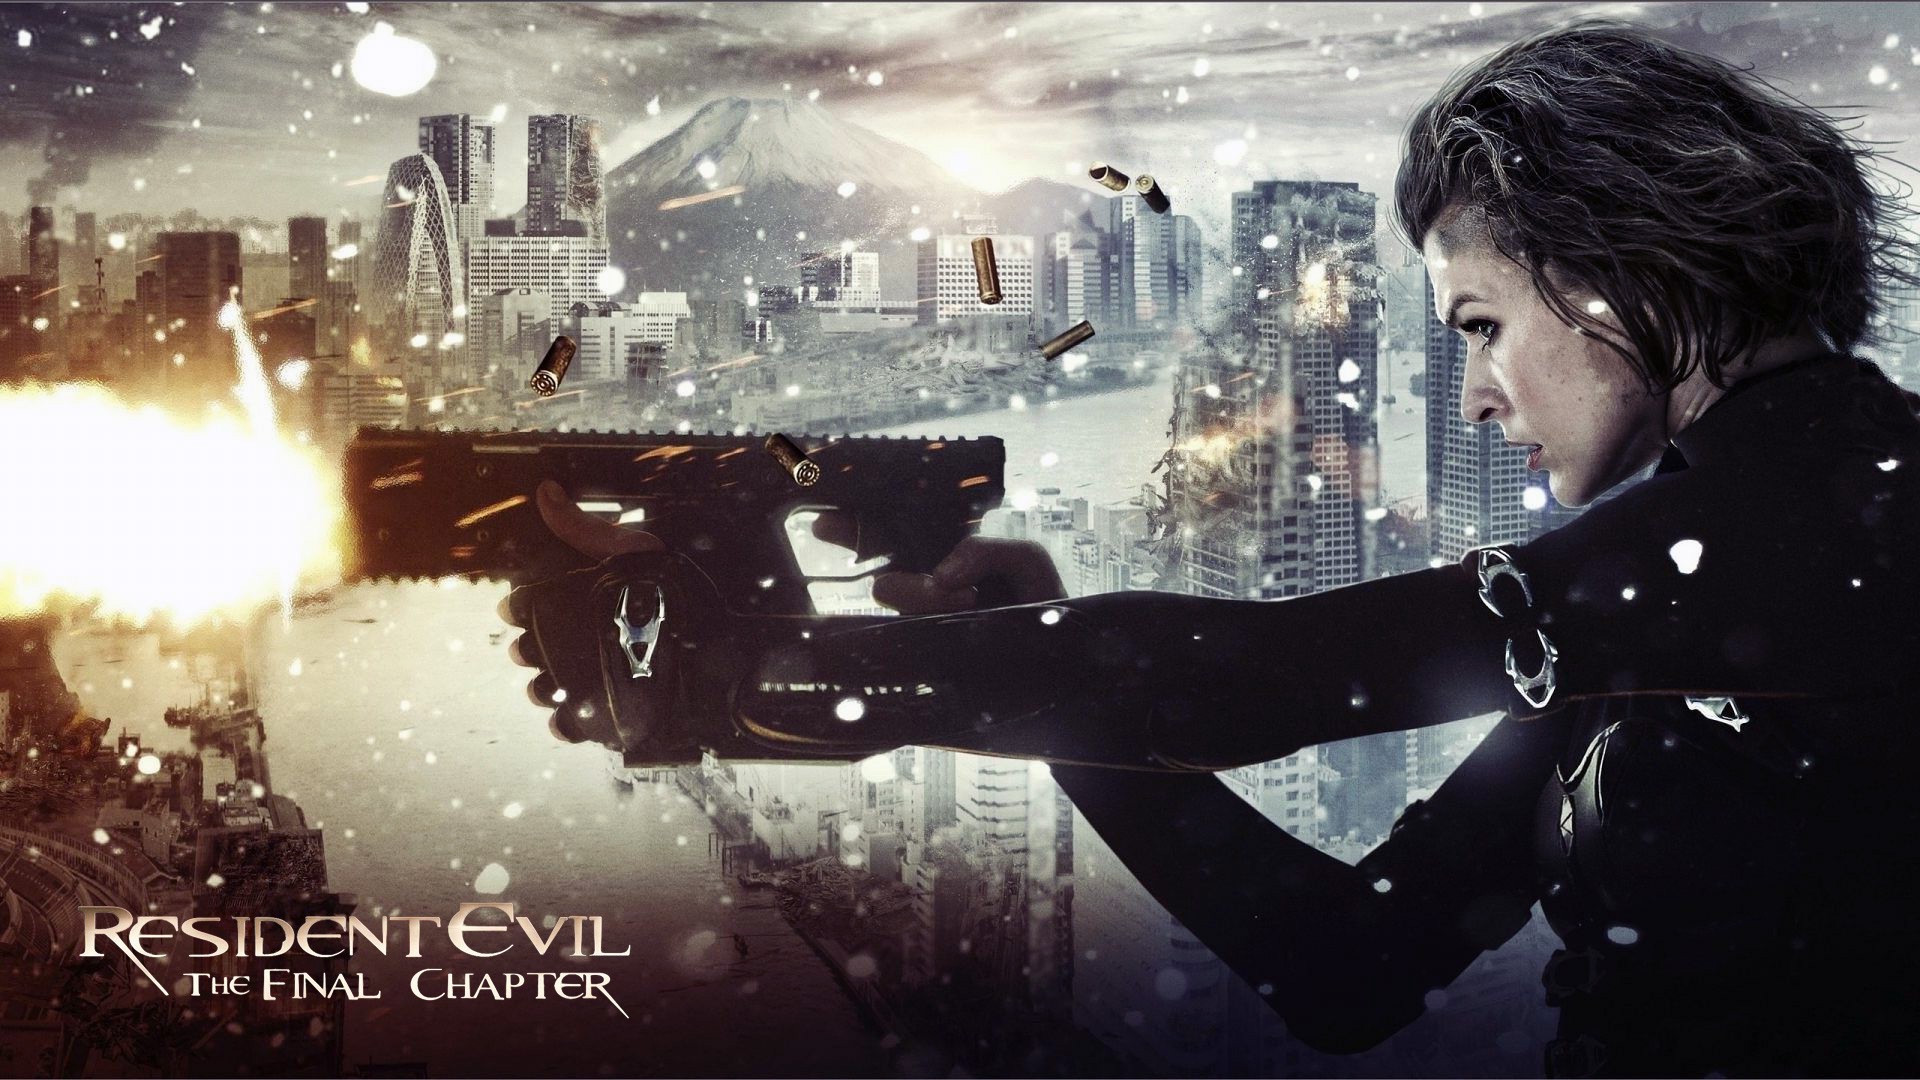 Resident Evil 5: Retribuição': Ação pós-apocalíptica com Milla